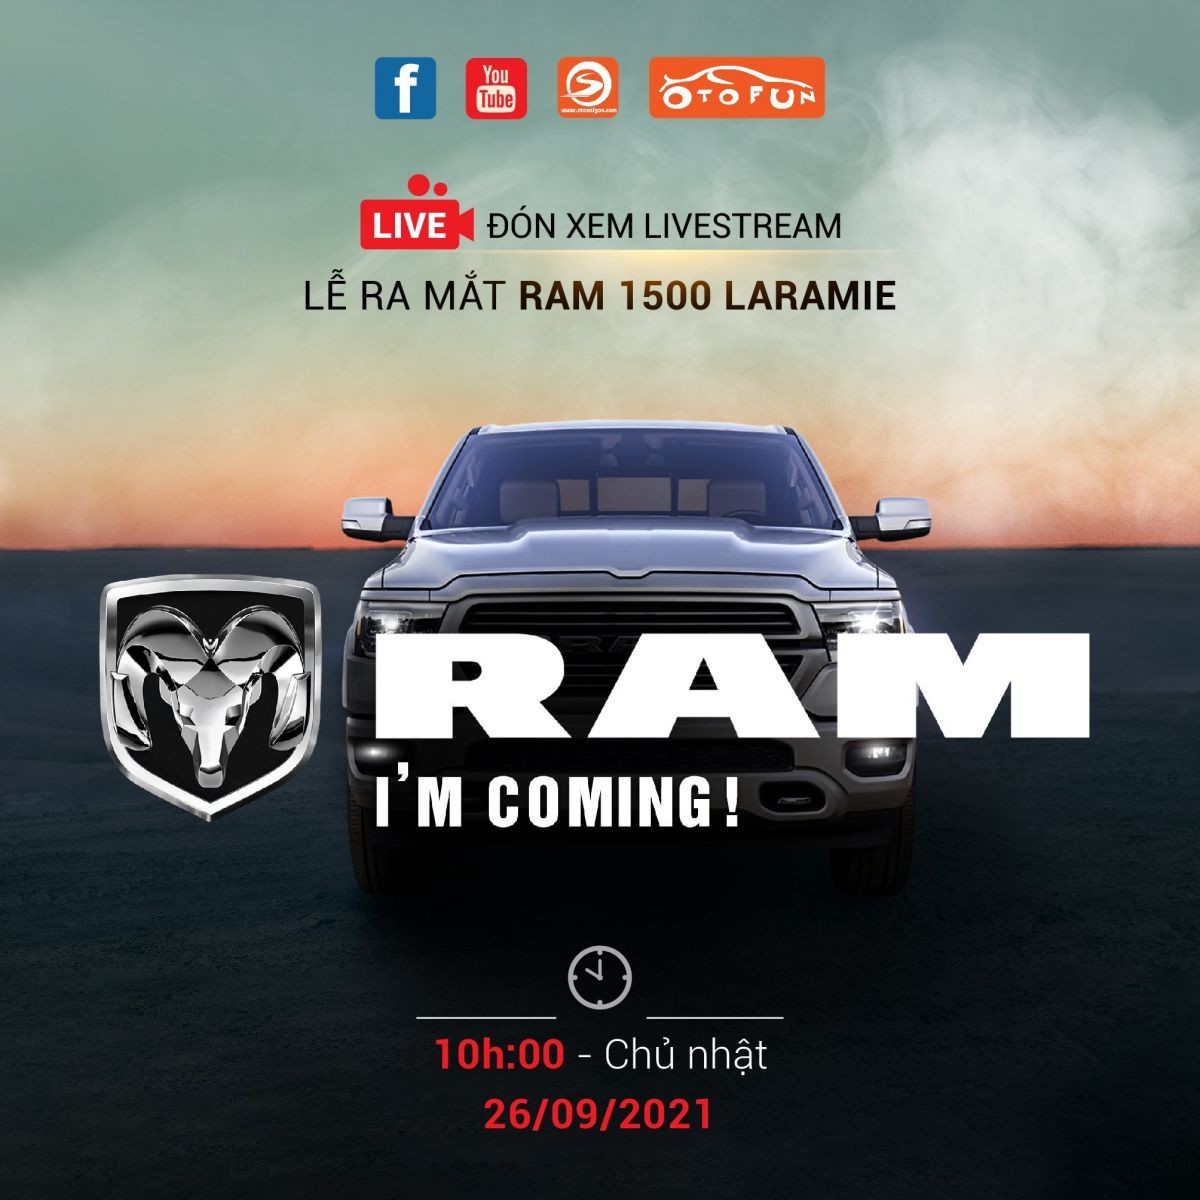 Dodge Ram 1500 Laramie ra mắt tại Việt Nam vào ngày 26/09